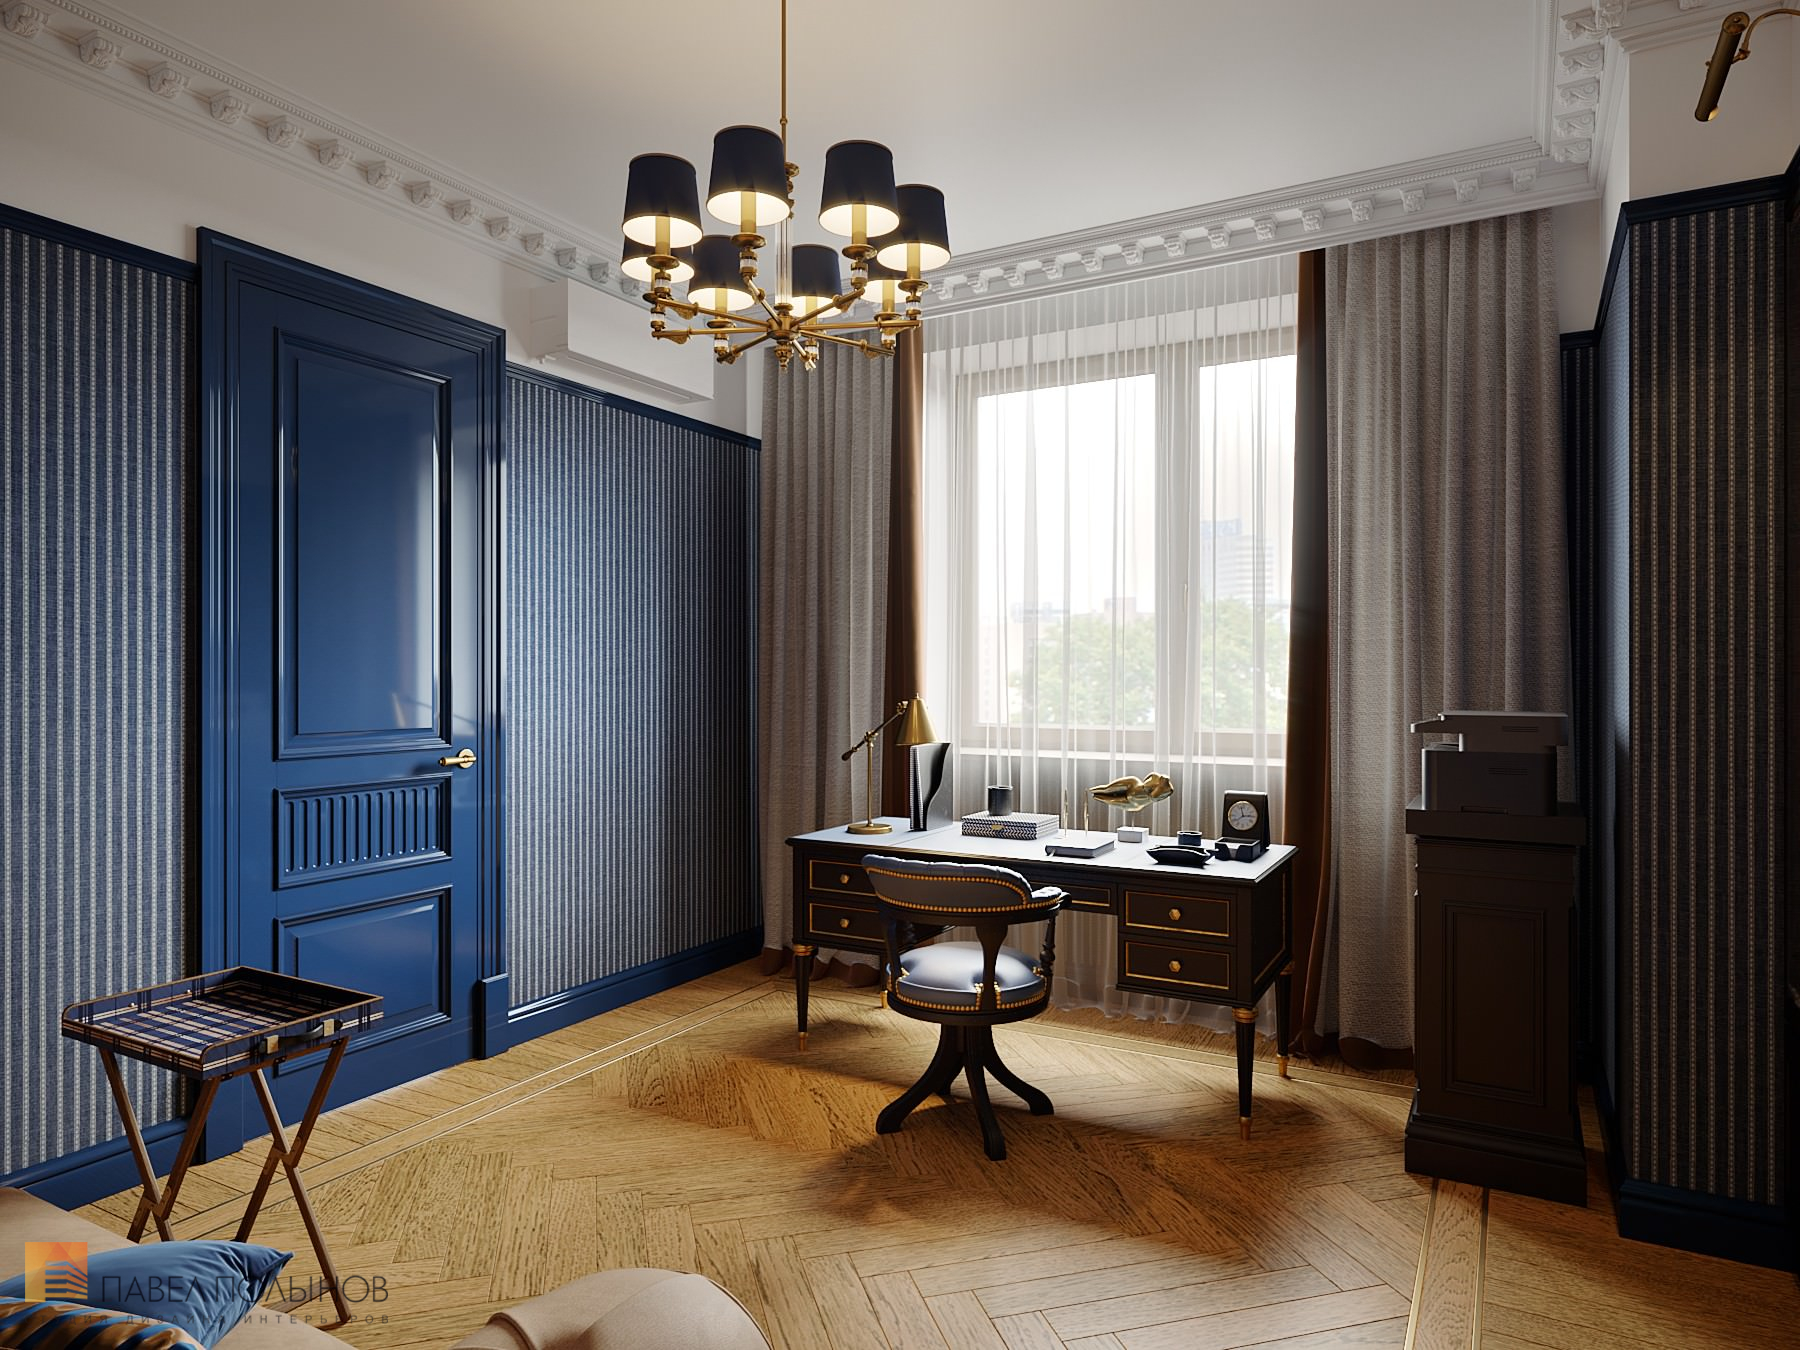 Фото дизайн интерьера кабинета из проекта «Интерьер квартиры в стиле английской классики, ЖК «Патриот», 124 кв.м.»